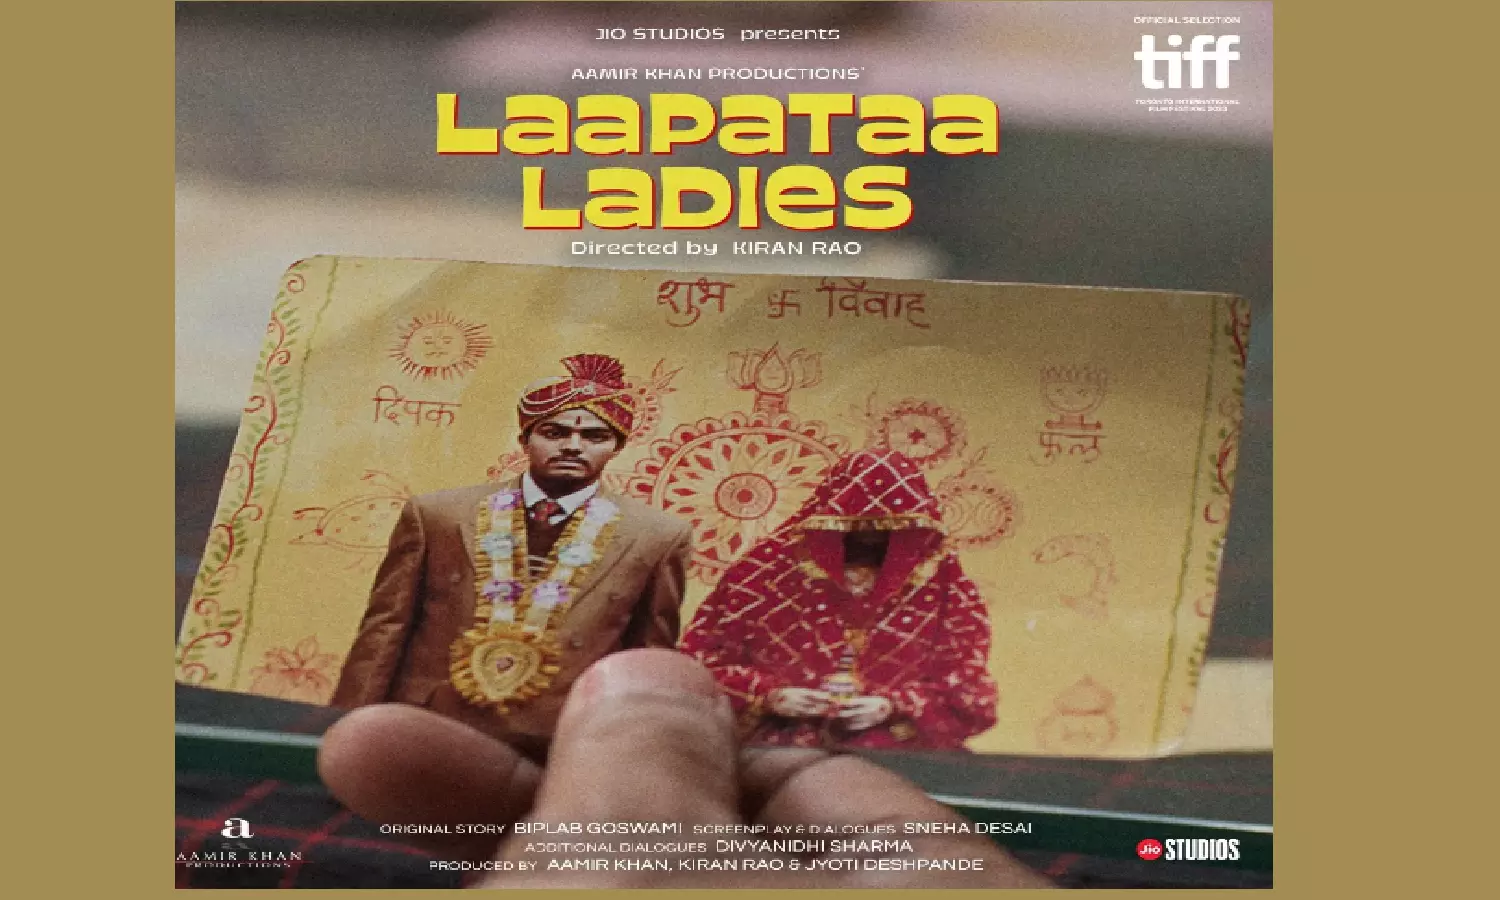 Laapataa Ladies Story : दुल्हनों की अदला-बदली पर आधारित लापता लेडीज हँसी की खुराक के साथ महत्वपूर्ण संदेश देती है